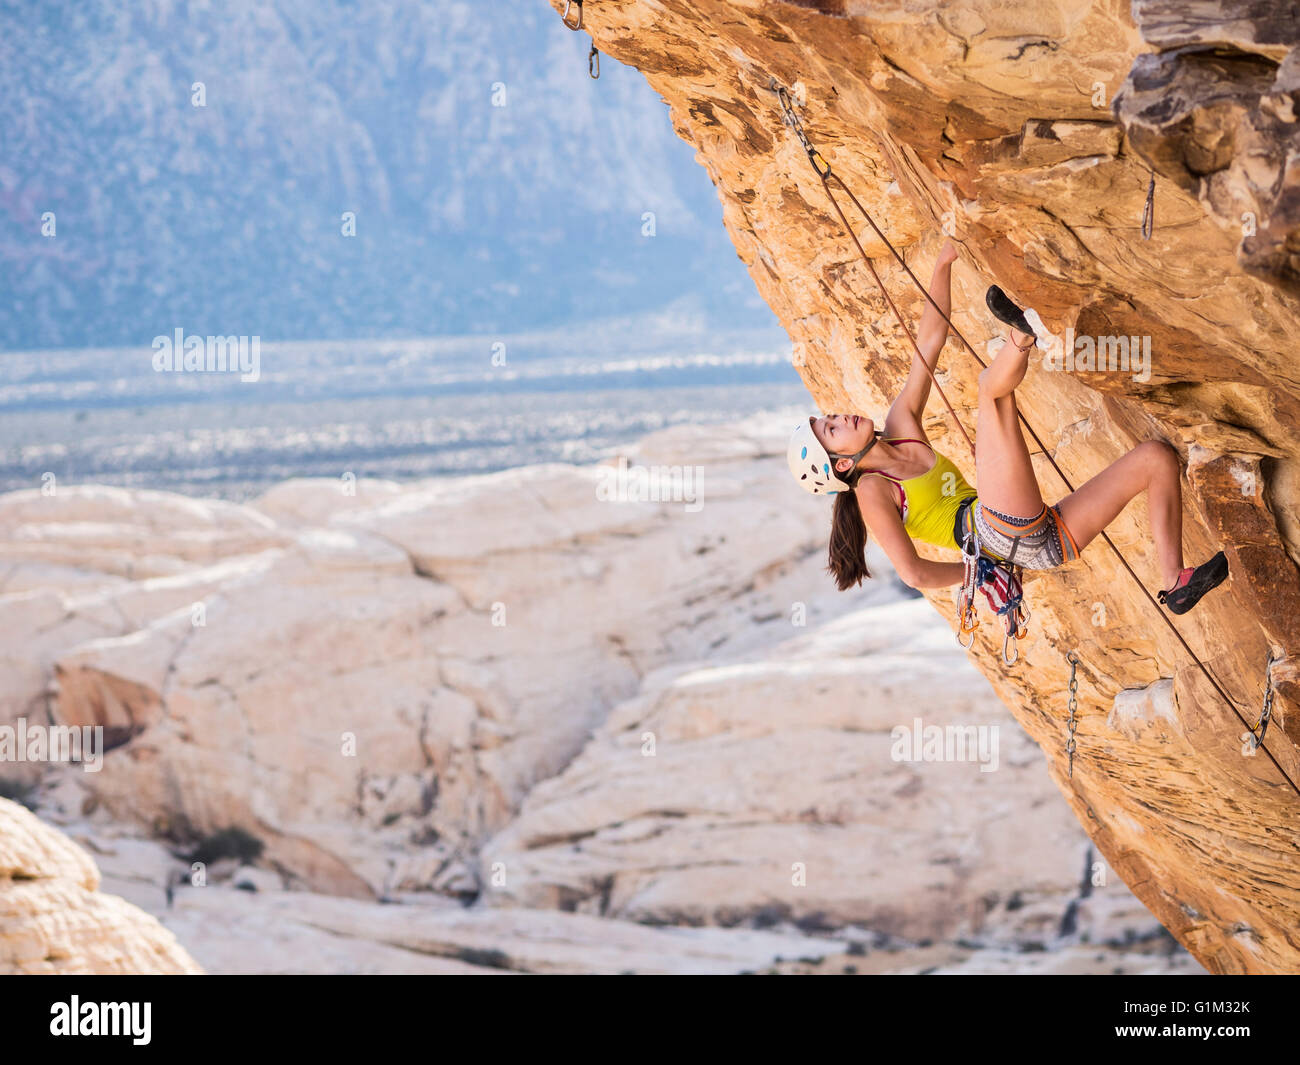 Niña de raza mixta escalada en roca sobre un acantilado Foto de stock